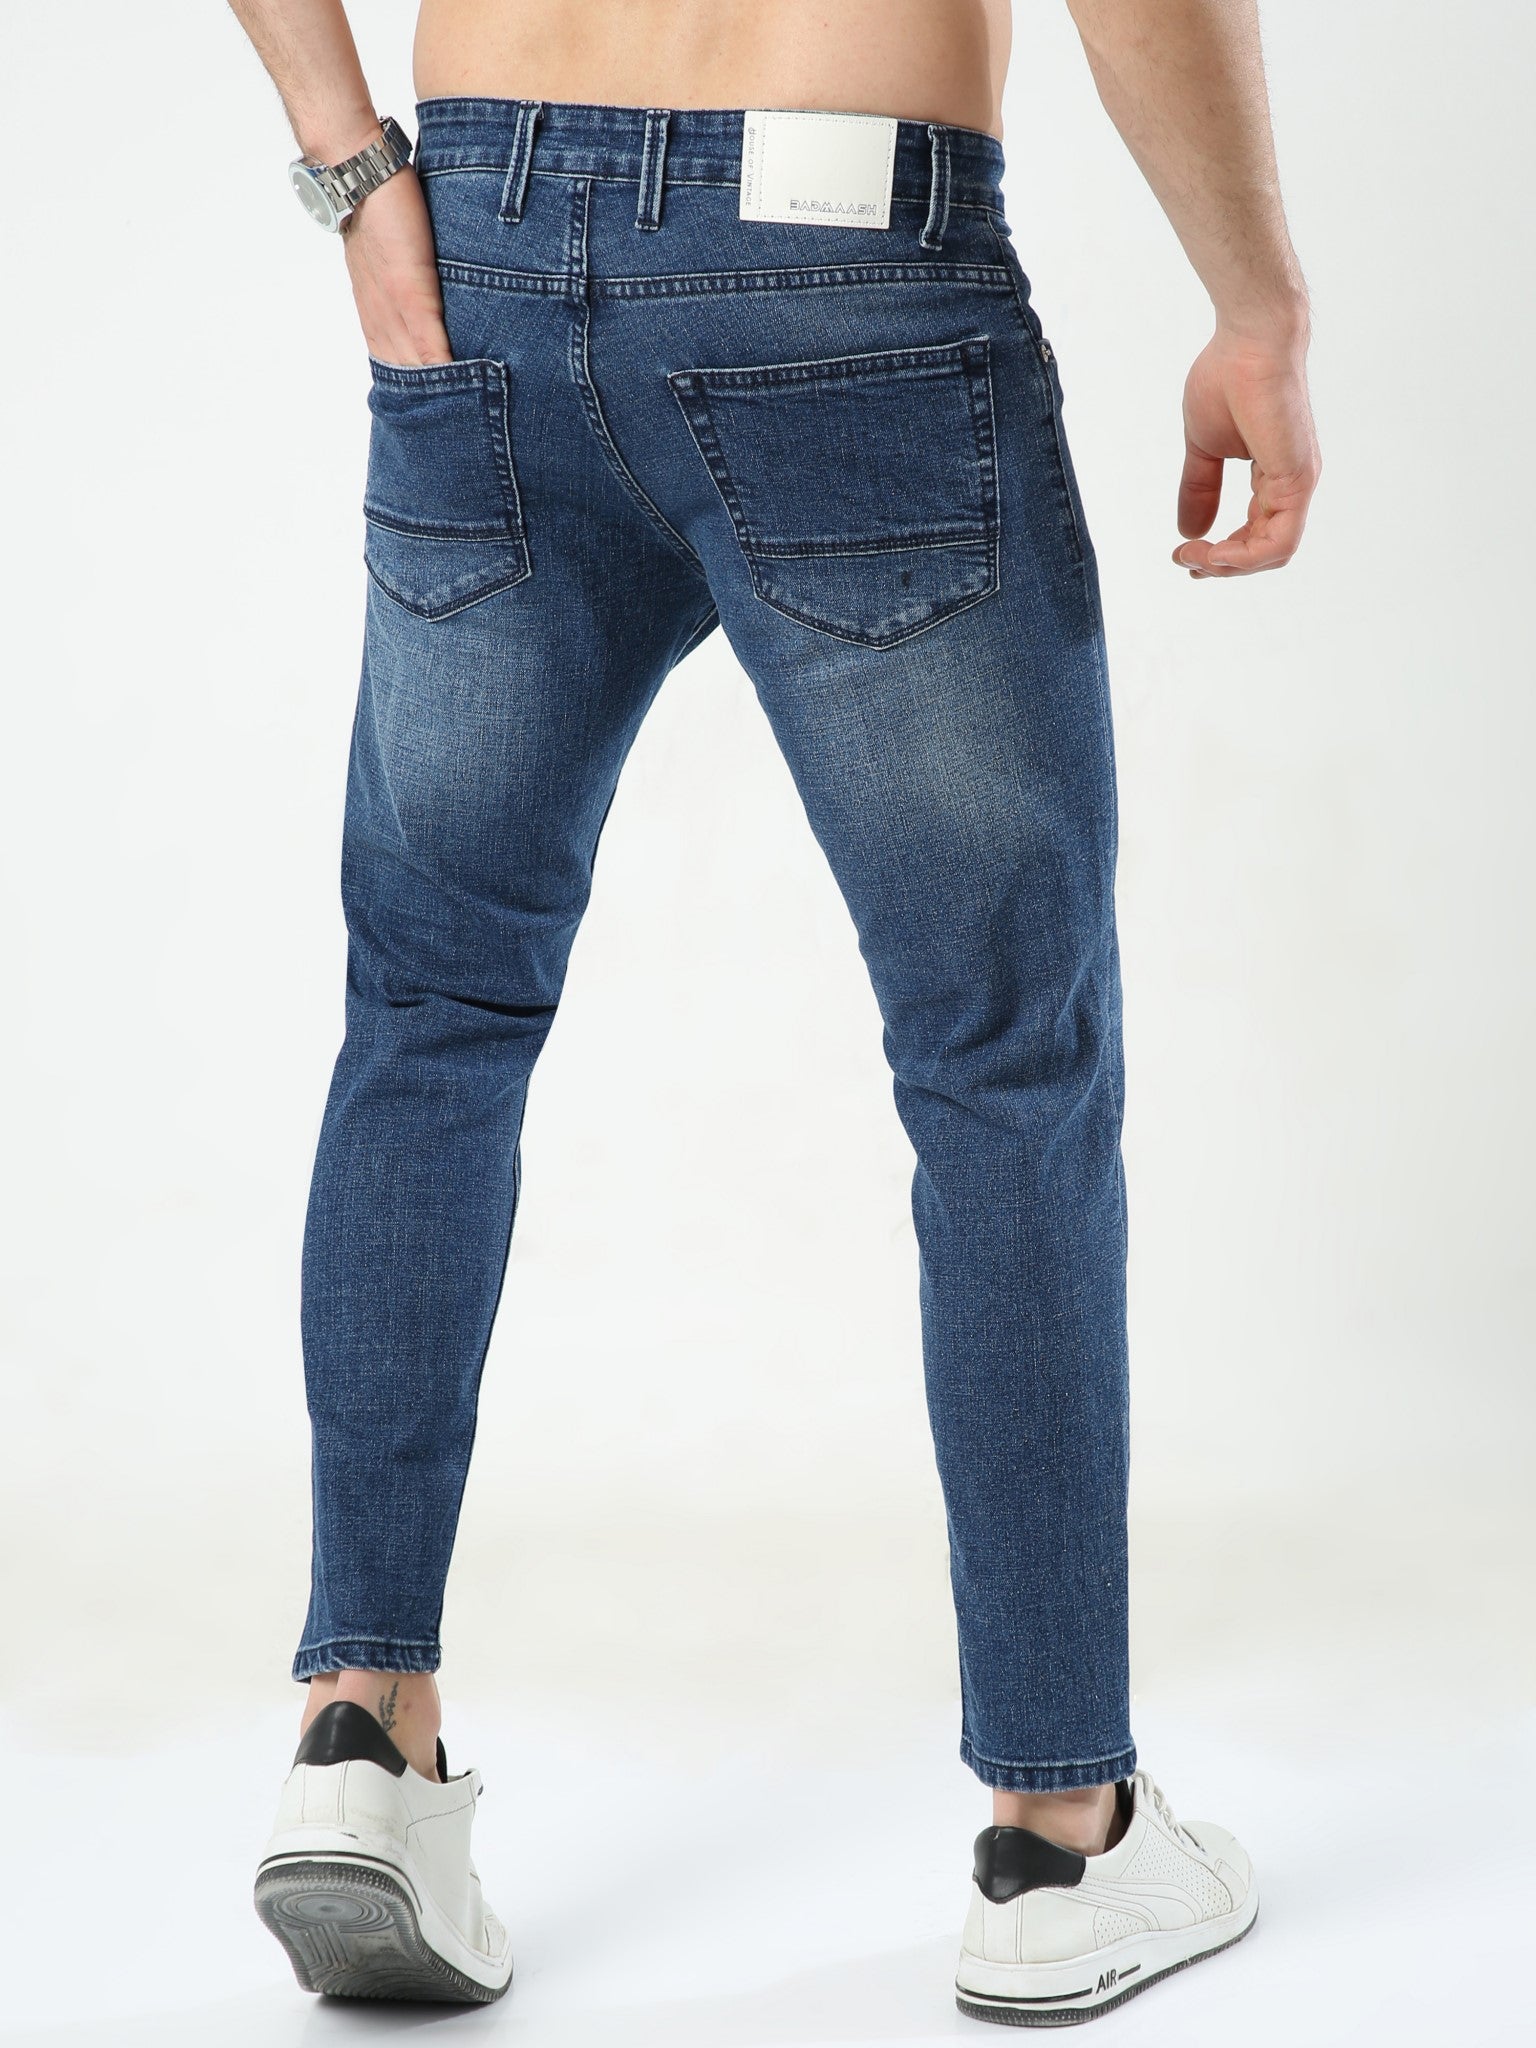 Gobelin Blue Skinny Jeans